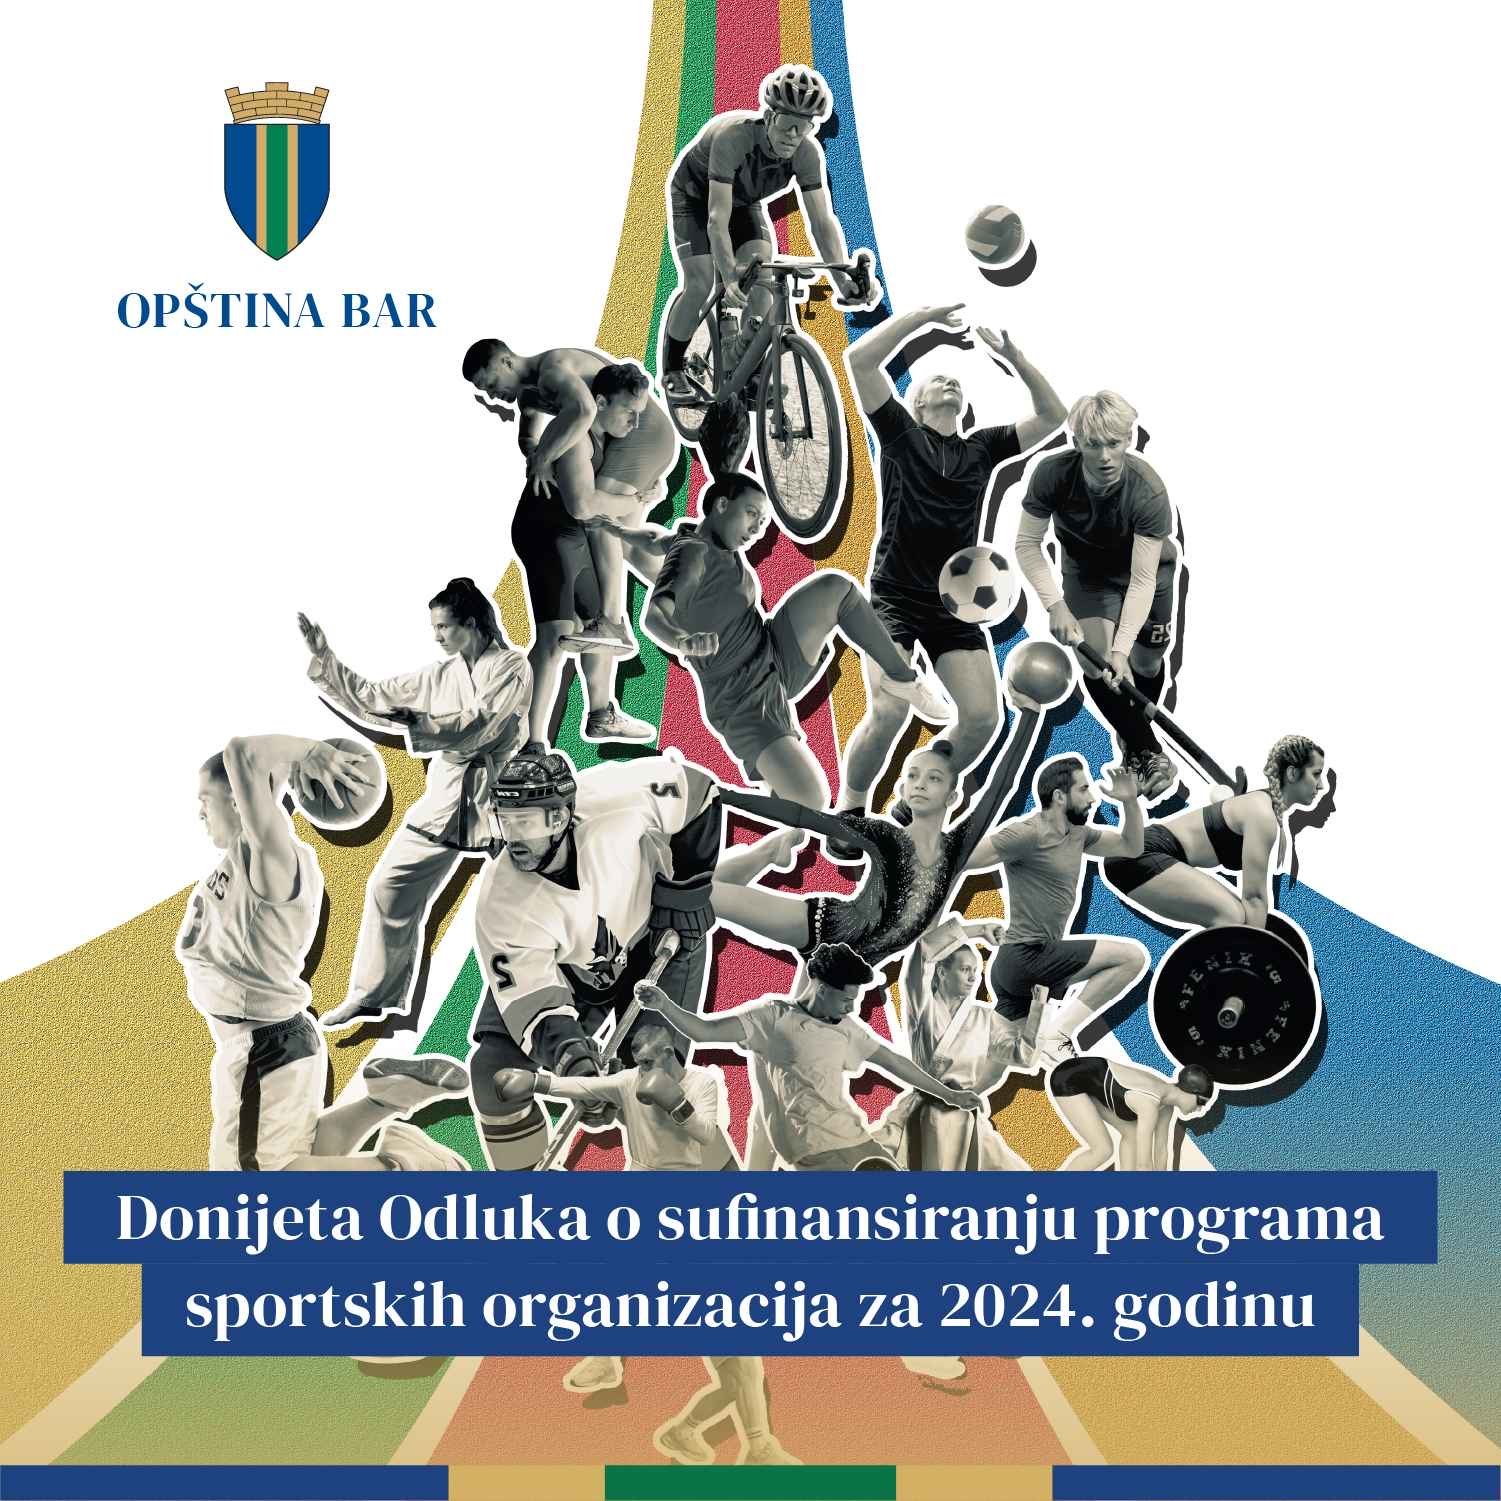 Donijeta Odluka o sufinansiranju programa sportskih organizacija za 2024.